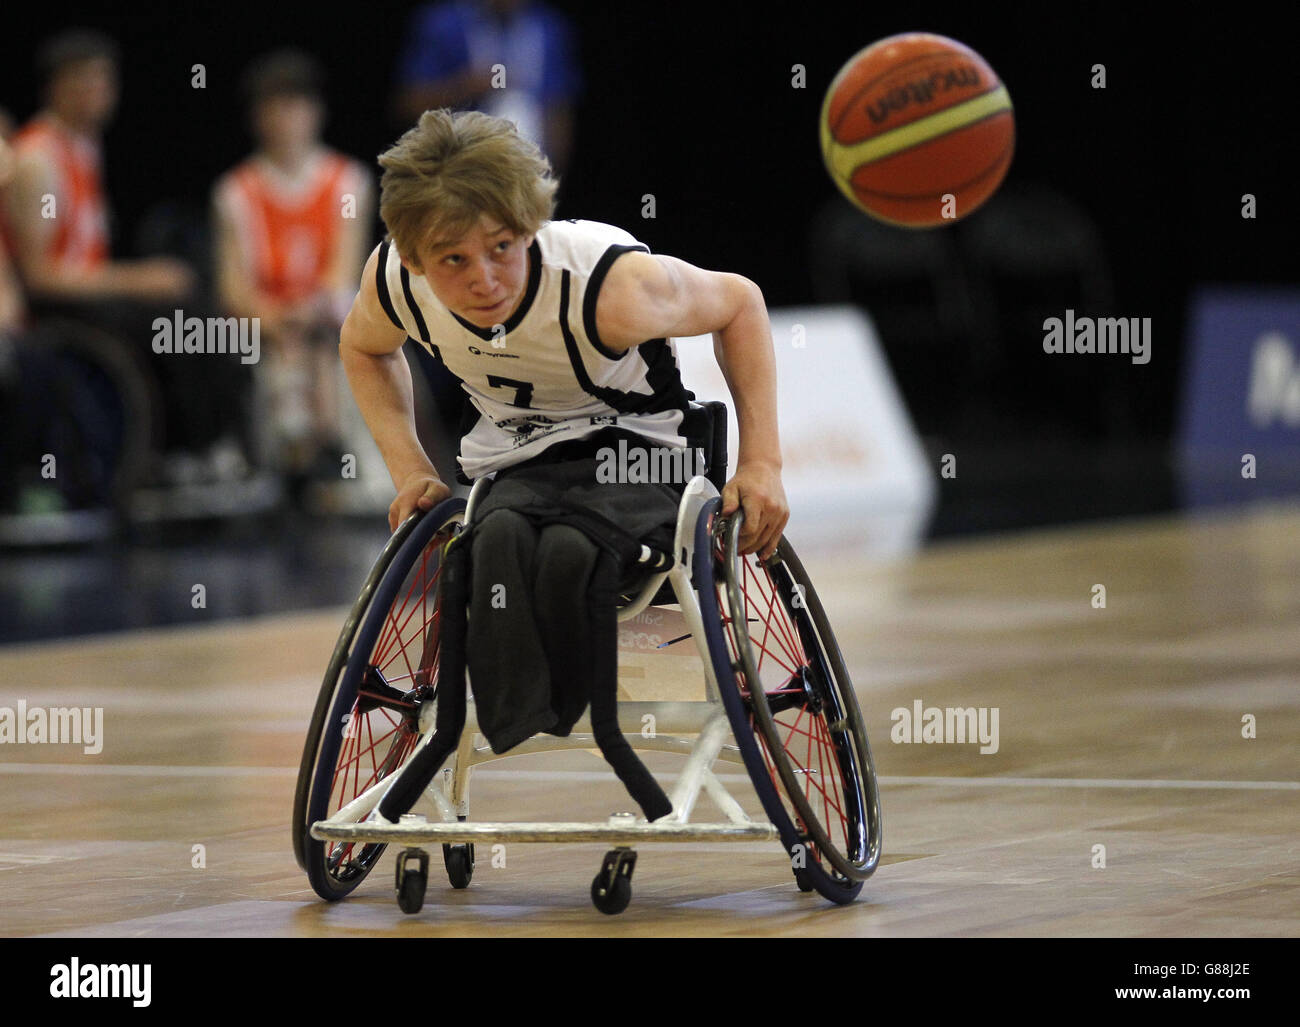 L'Angleterre du Nord en action lors de la finale de basketball en fauteuil roulant aux Jeux scolaires de Sainsbury en 2015 à l'arène régionale de Manchester. Banque D'Images